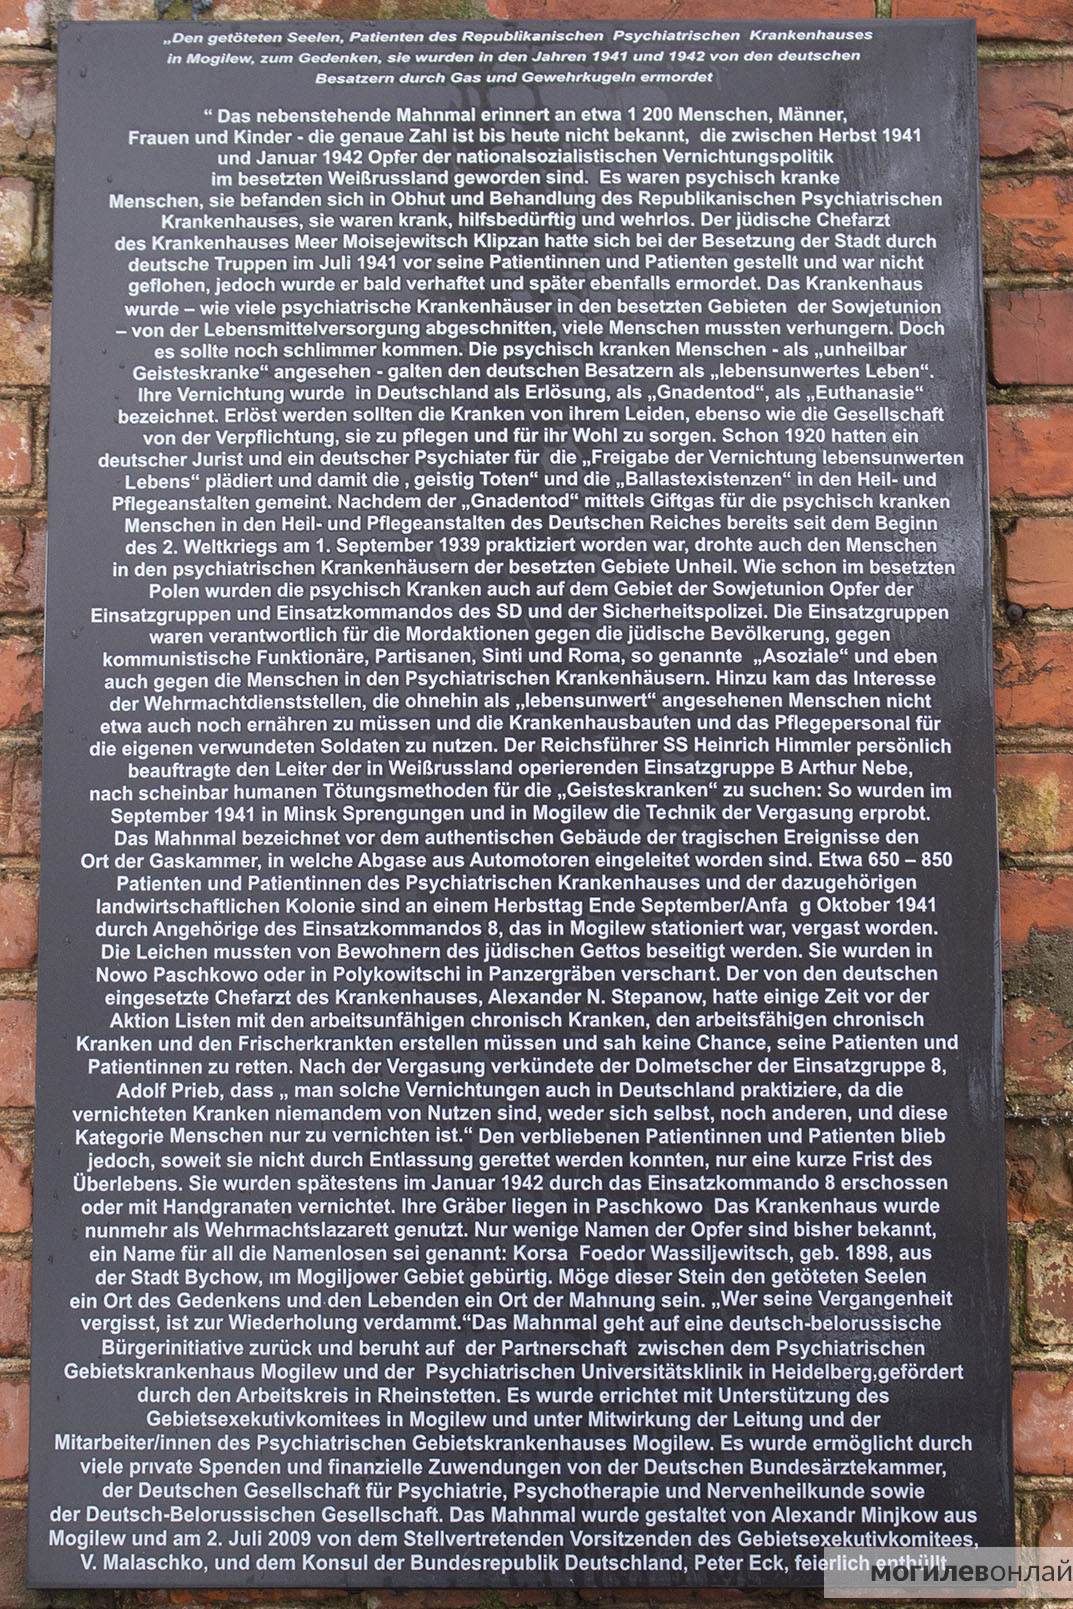 Мемориал жертвам нацизма на территории Могилевской областной психиатрической больницы, текст на немецком языке